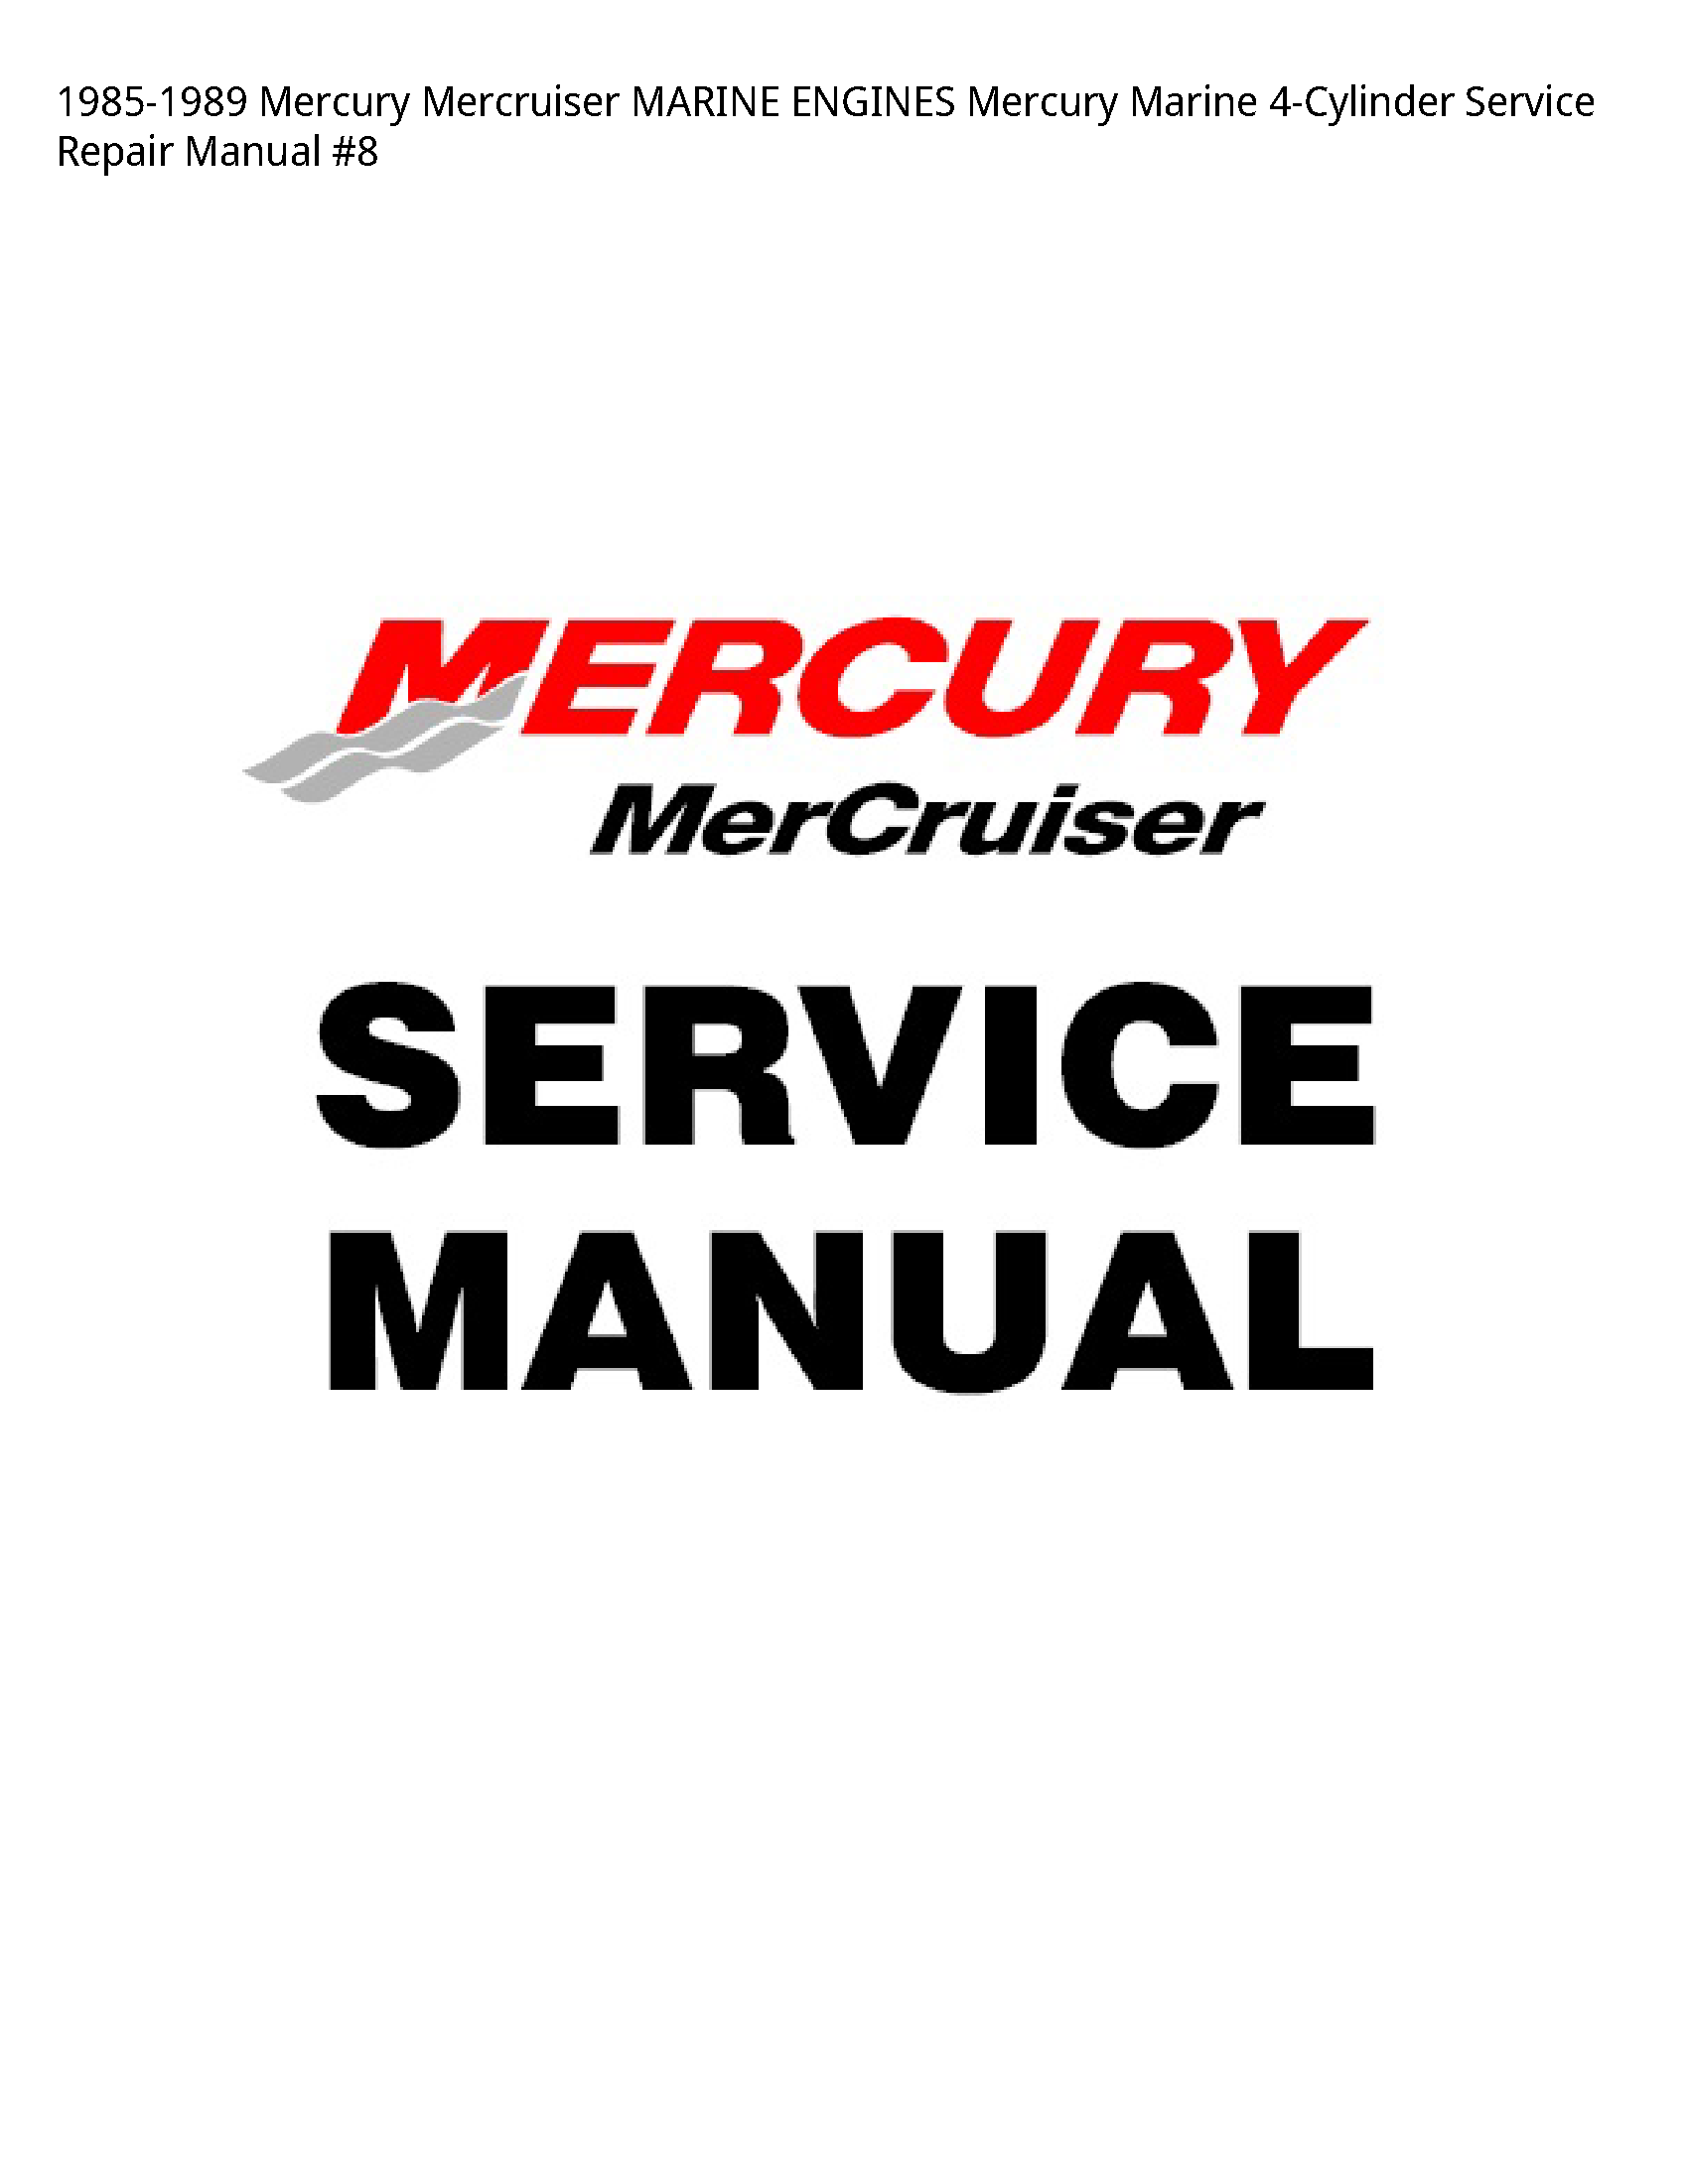 Mercury 4-Cylinder Mercruiser MARINE ENGINES Mercury Marine manual